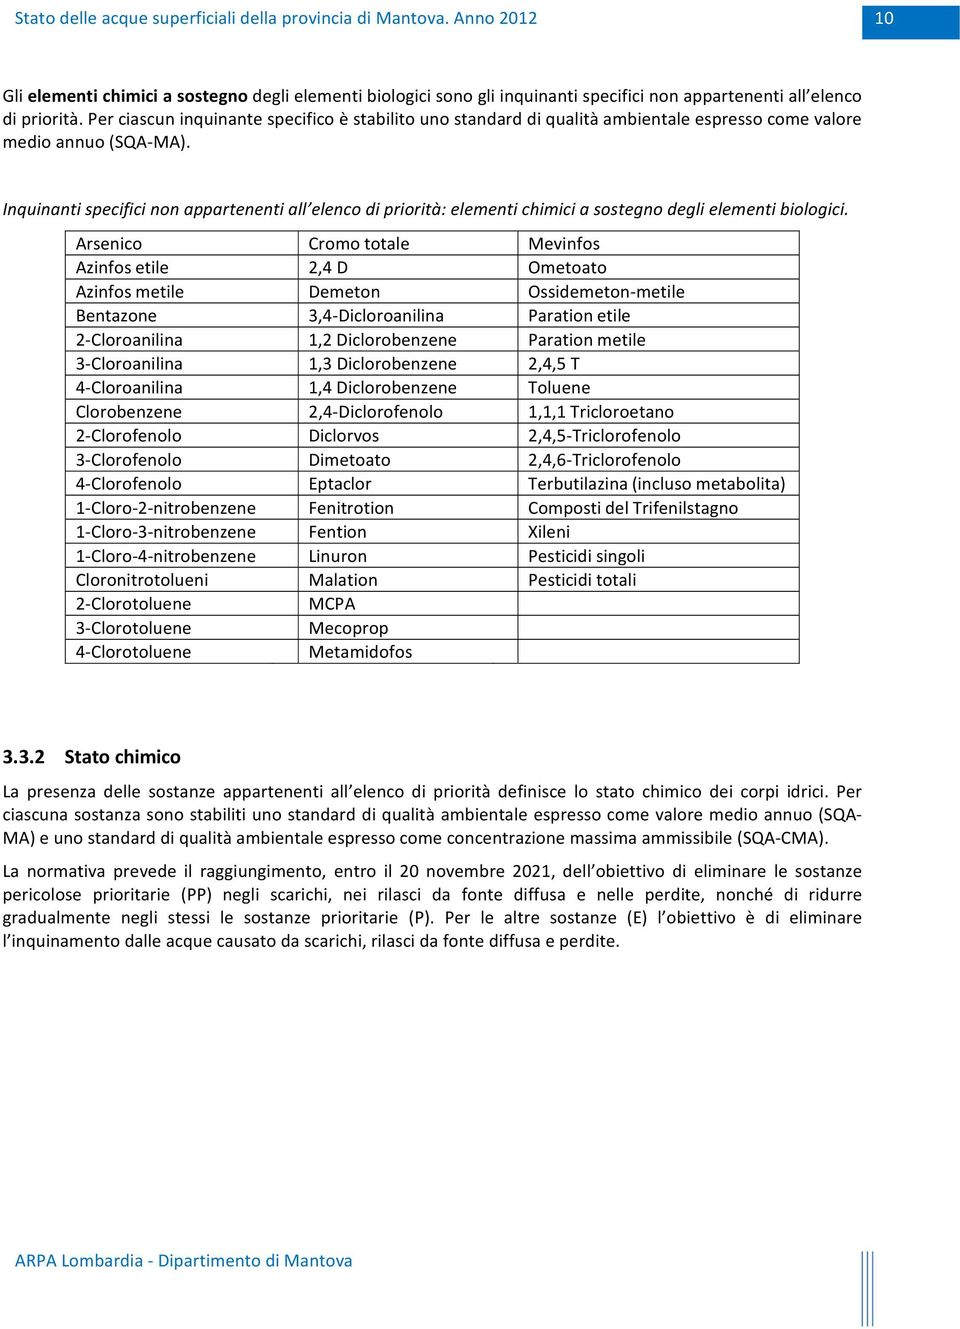 Inquinanti specifici non appartenenti all elenco di priorità: elementi chimici a sostegno degli elementi biologici.